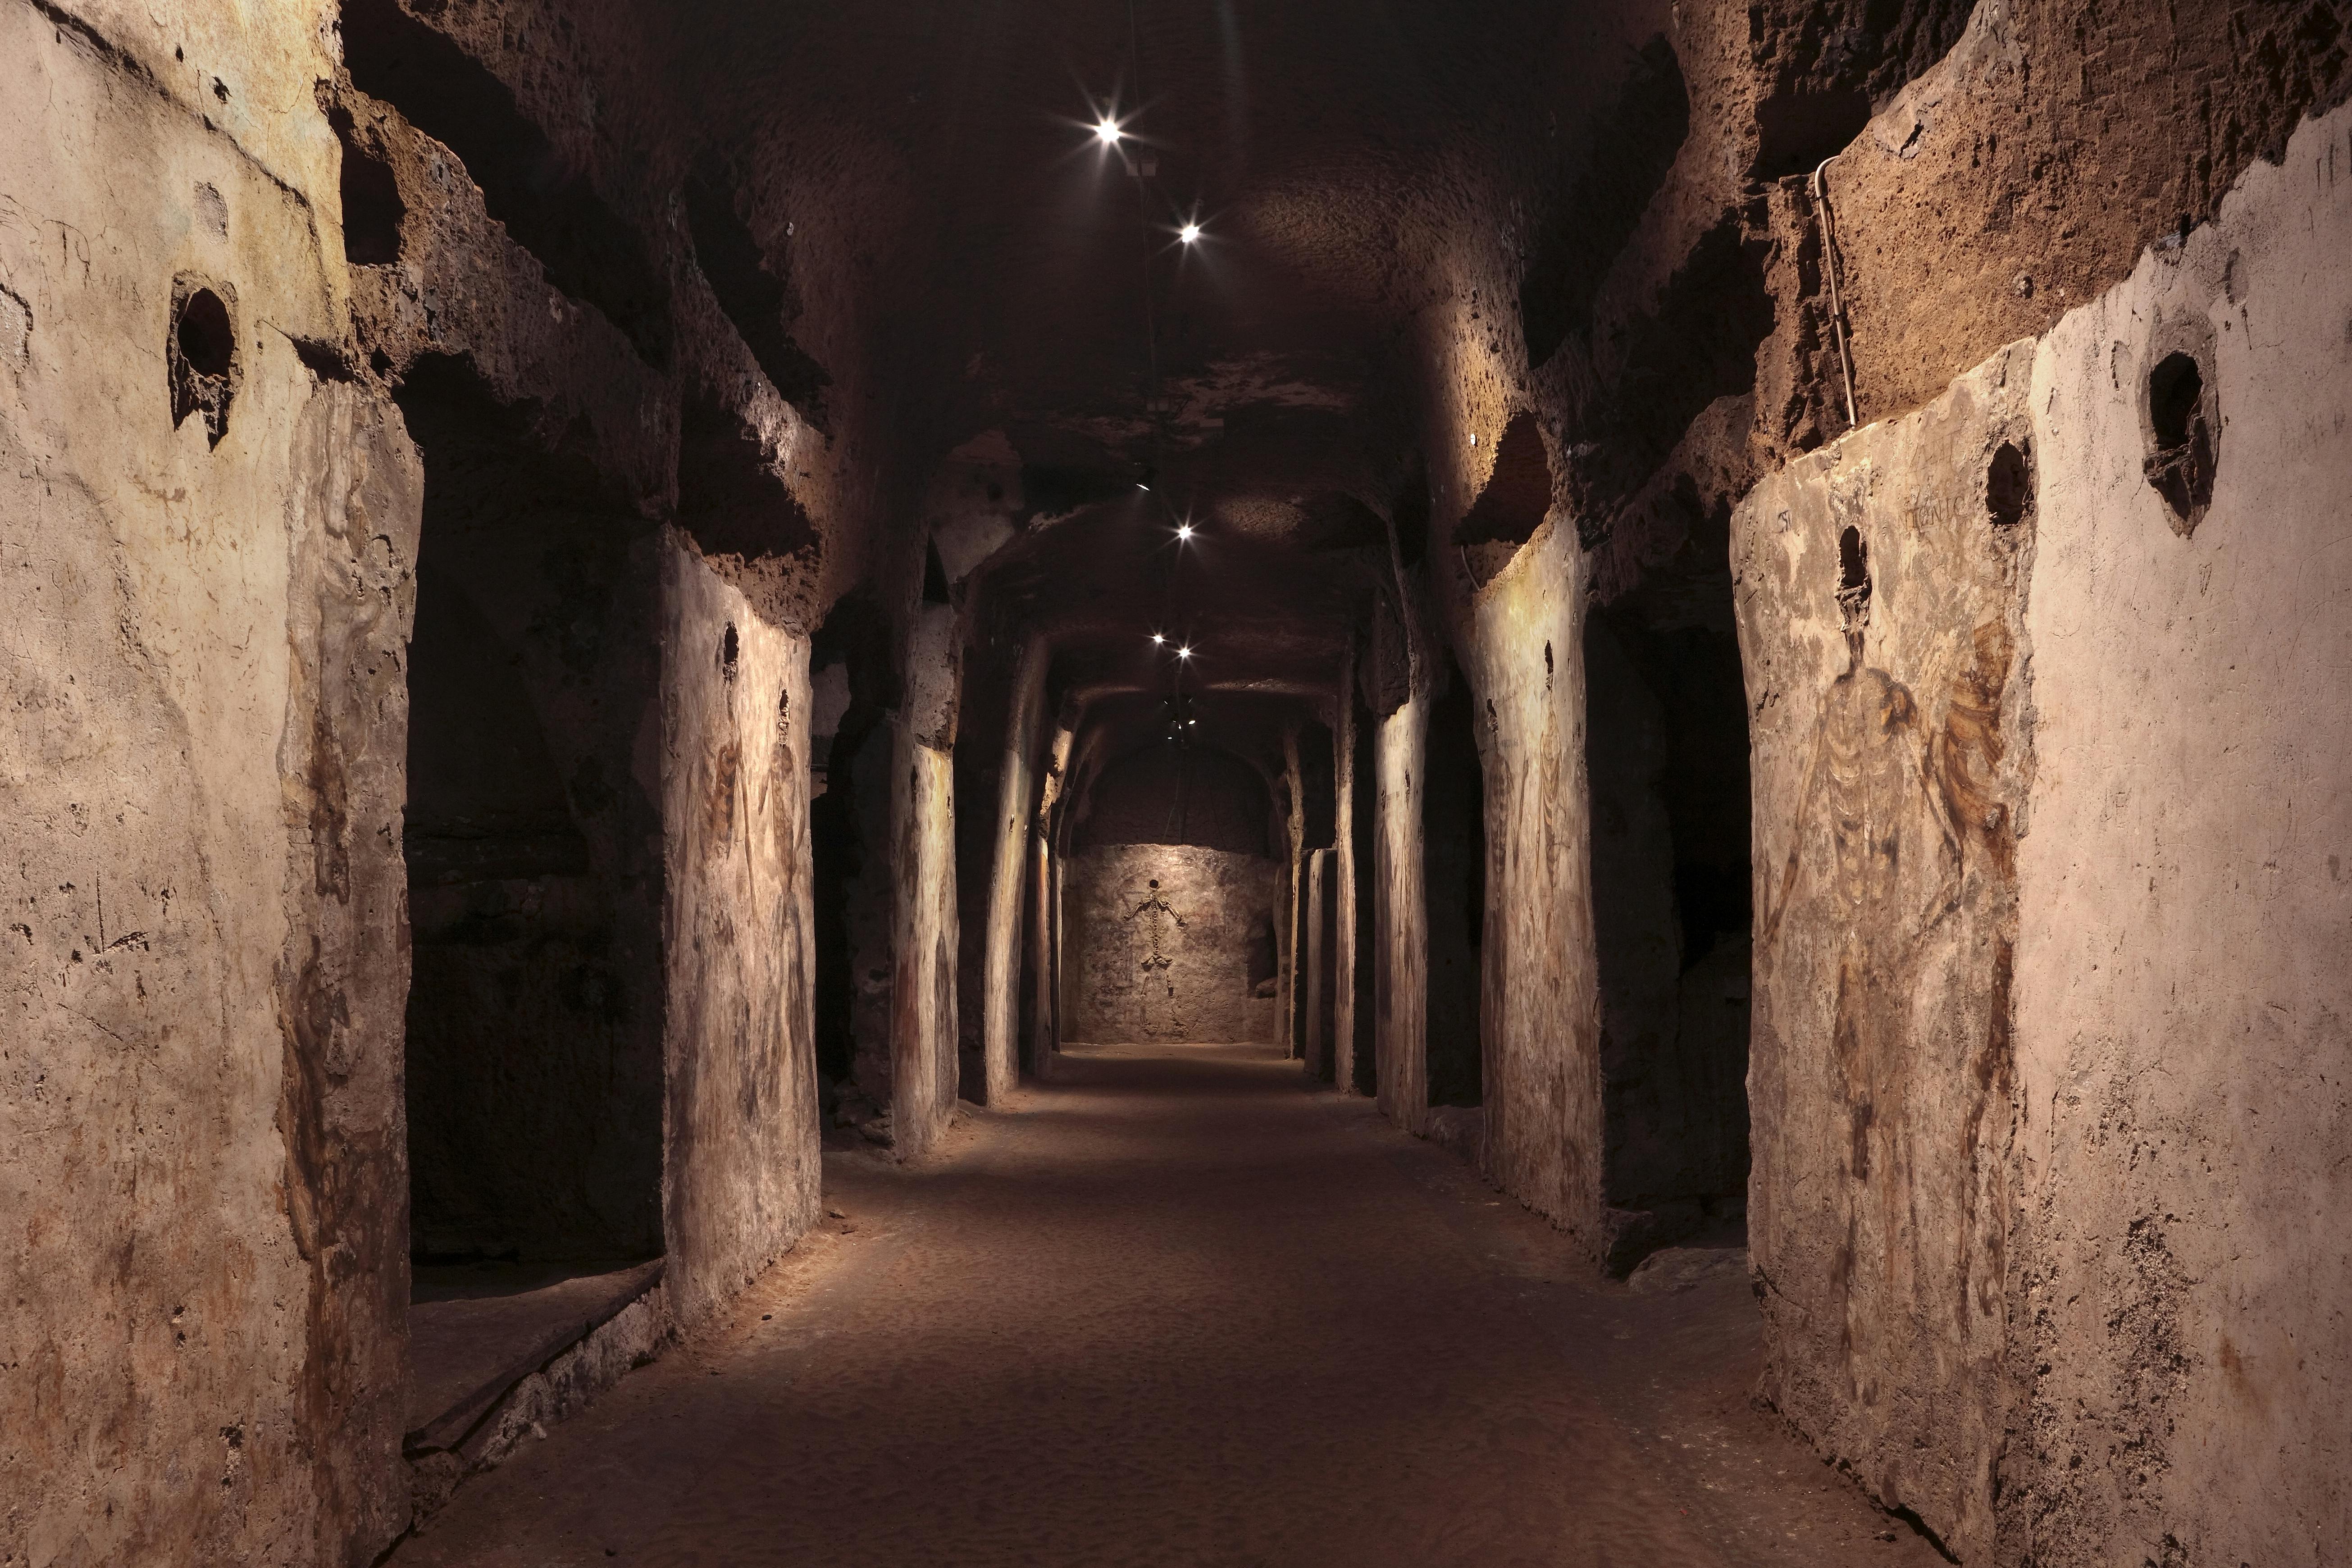 Biljetter och guidad rundtur av katakomberna i San Gaudioso